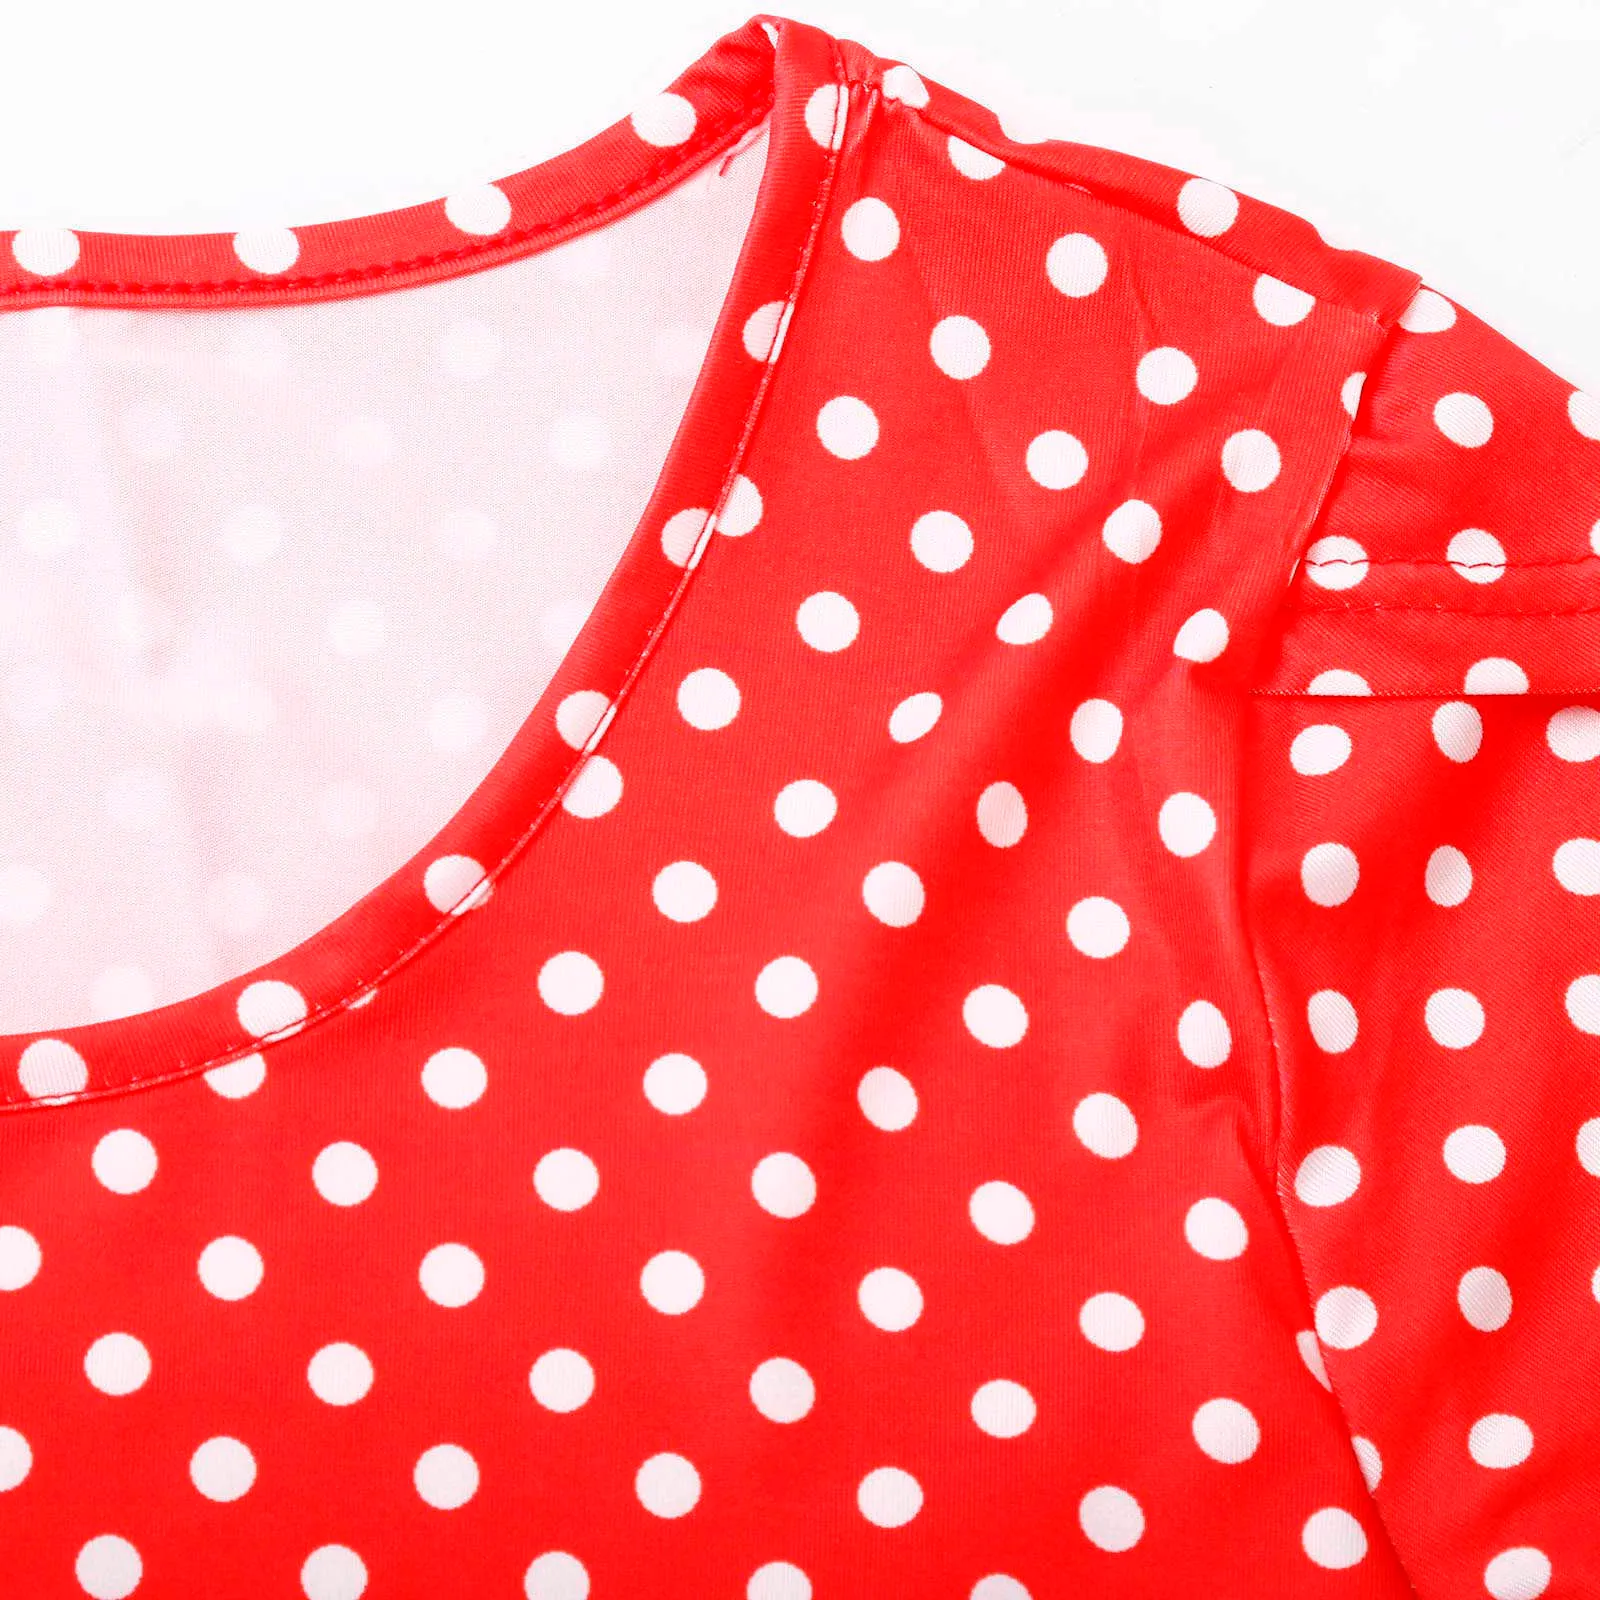 Kleid frauen Schwangere Stillen Baby Mutterschaft Joint Polka Dot Druck Outwear Kleid robe femme Kleidung für schwangere frauen Q0713